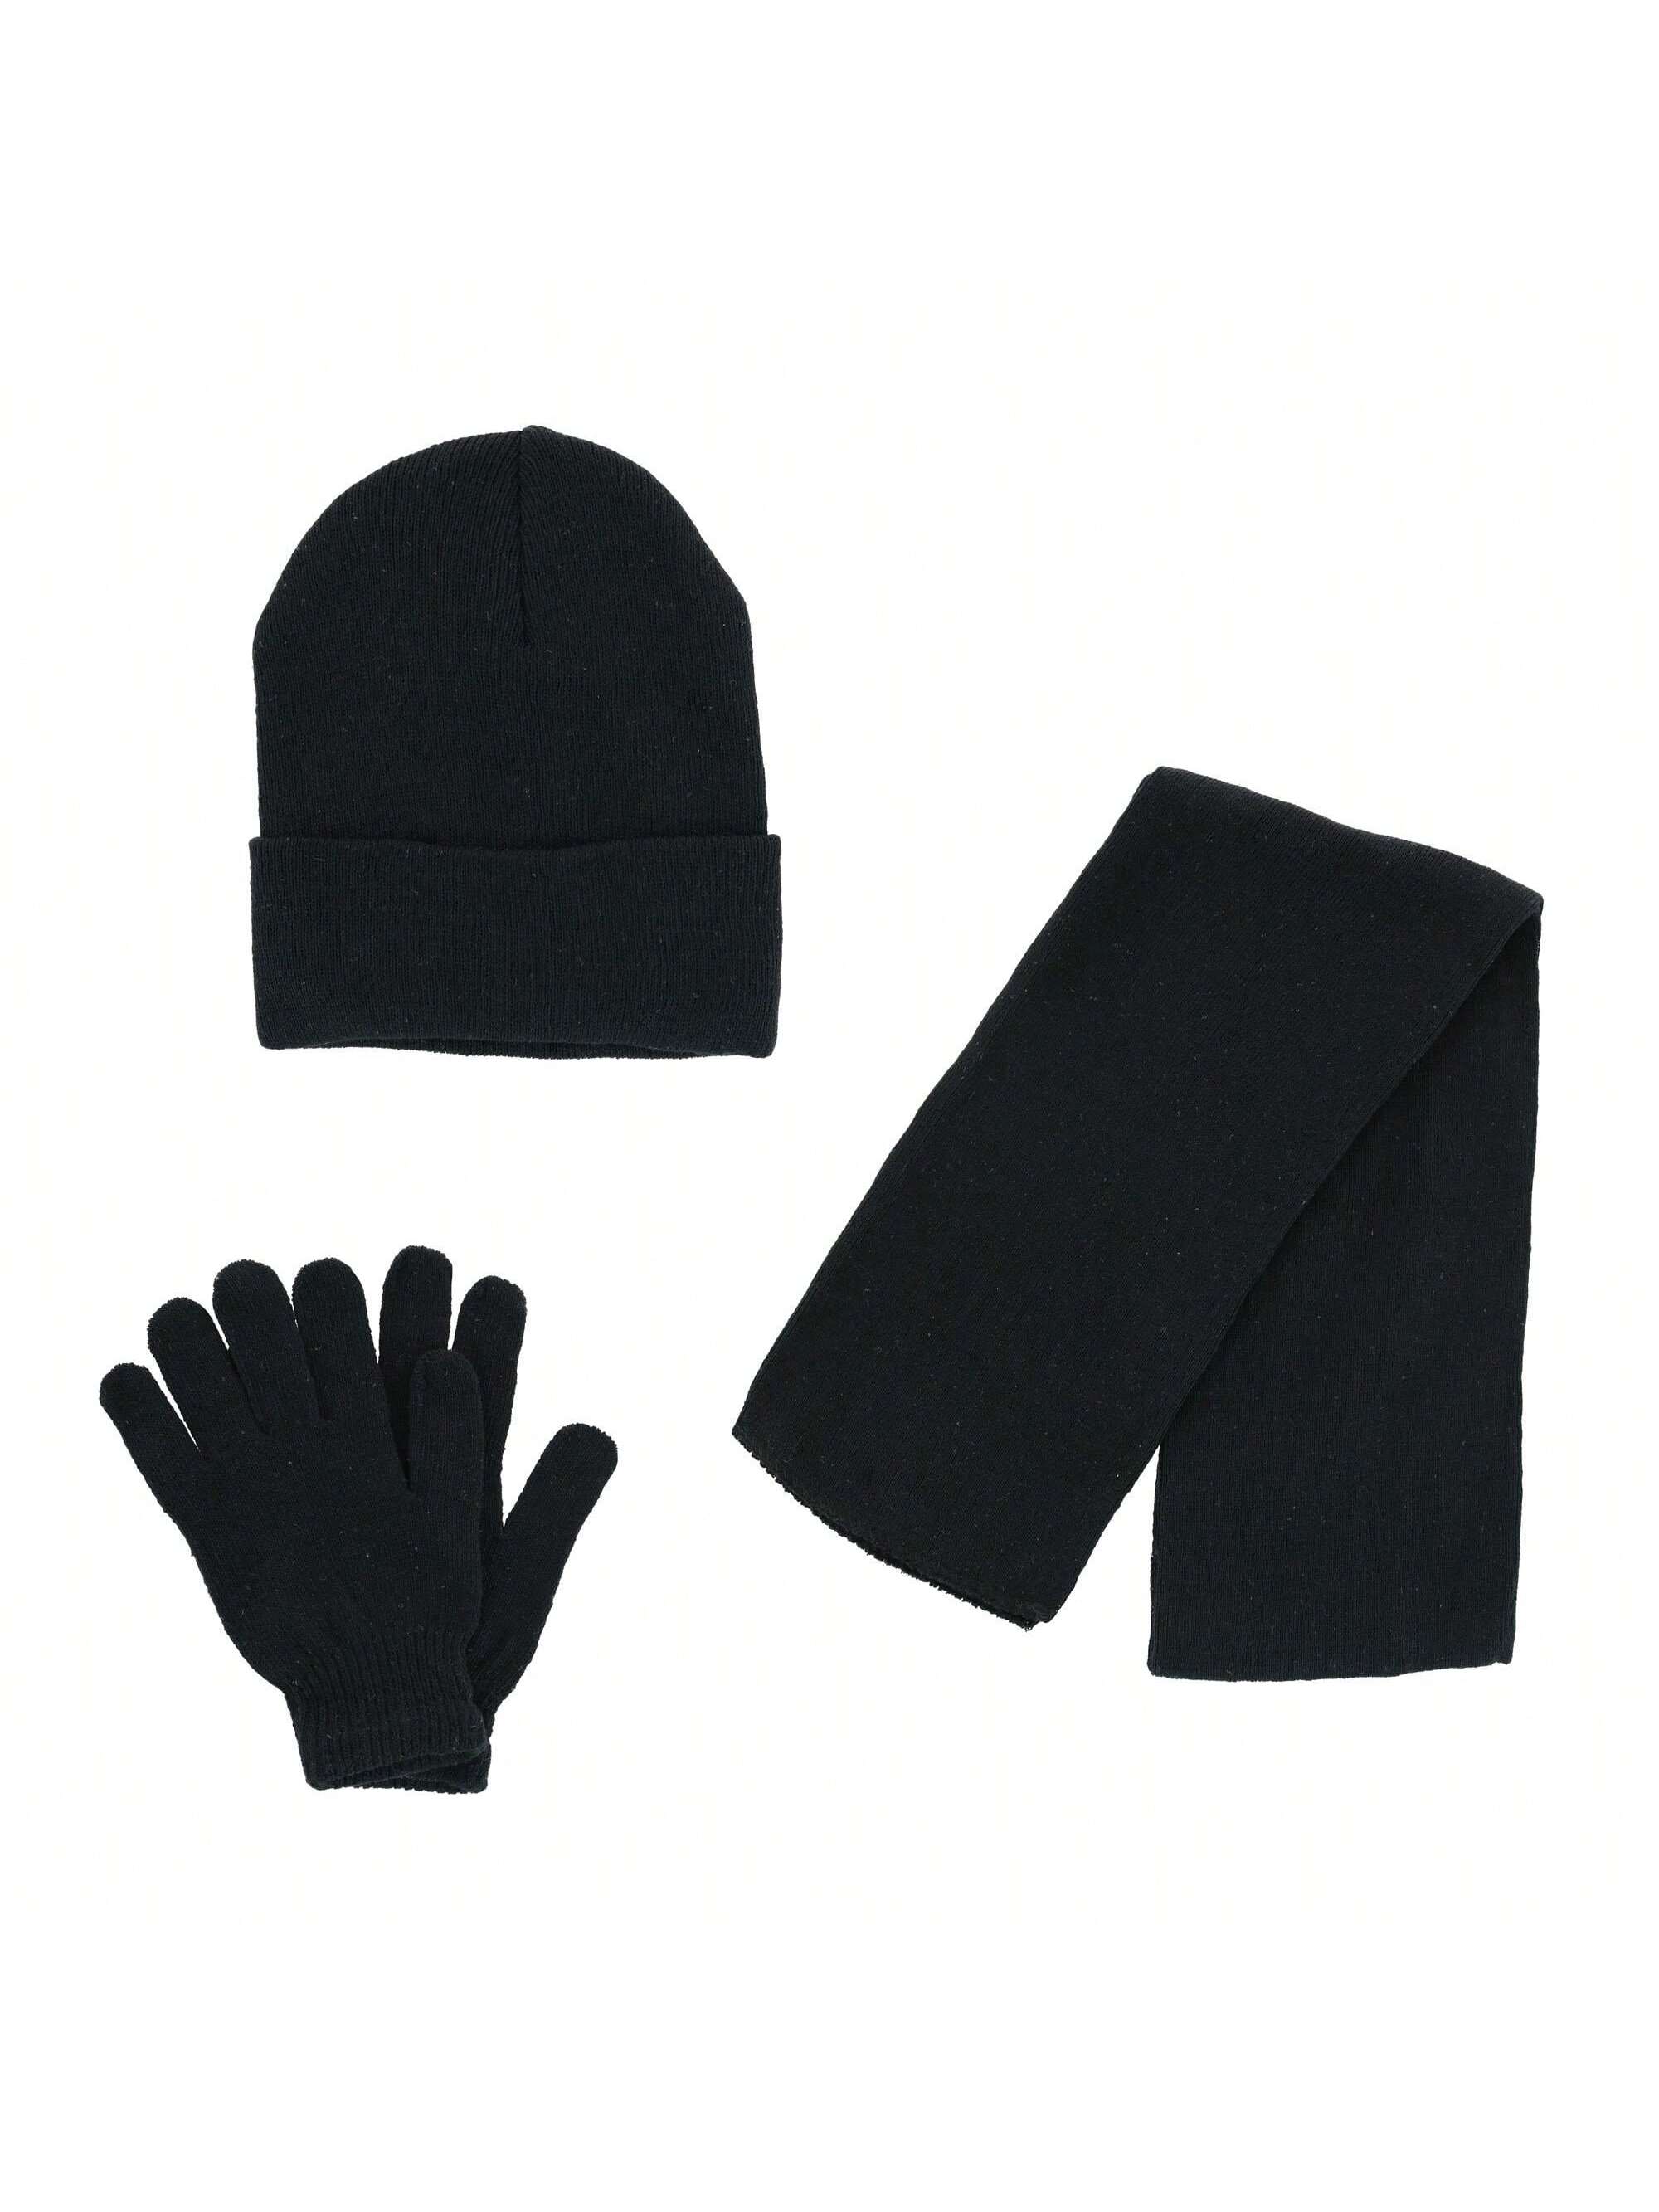 Базовая шапка-бини CTM, комплект из шарфа и перчаток, черный